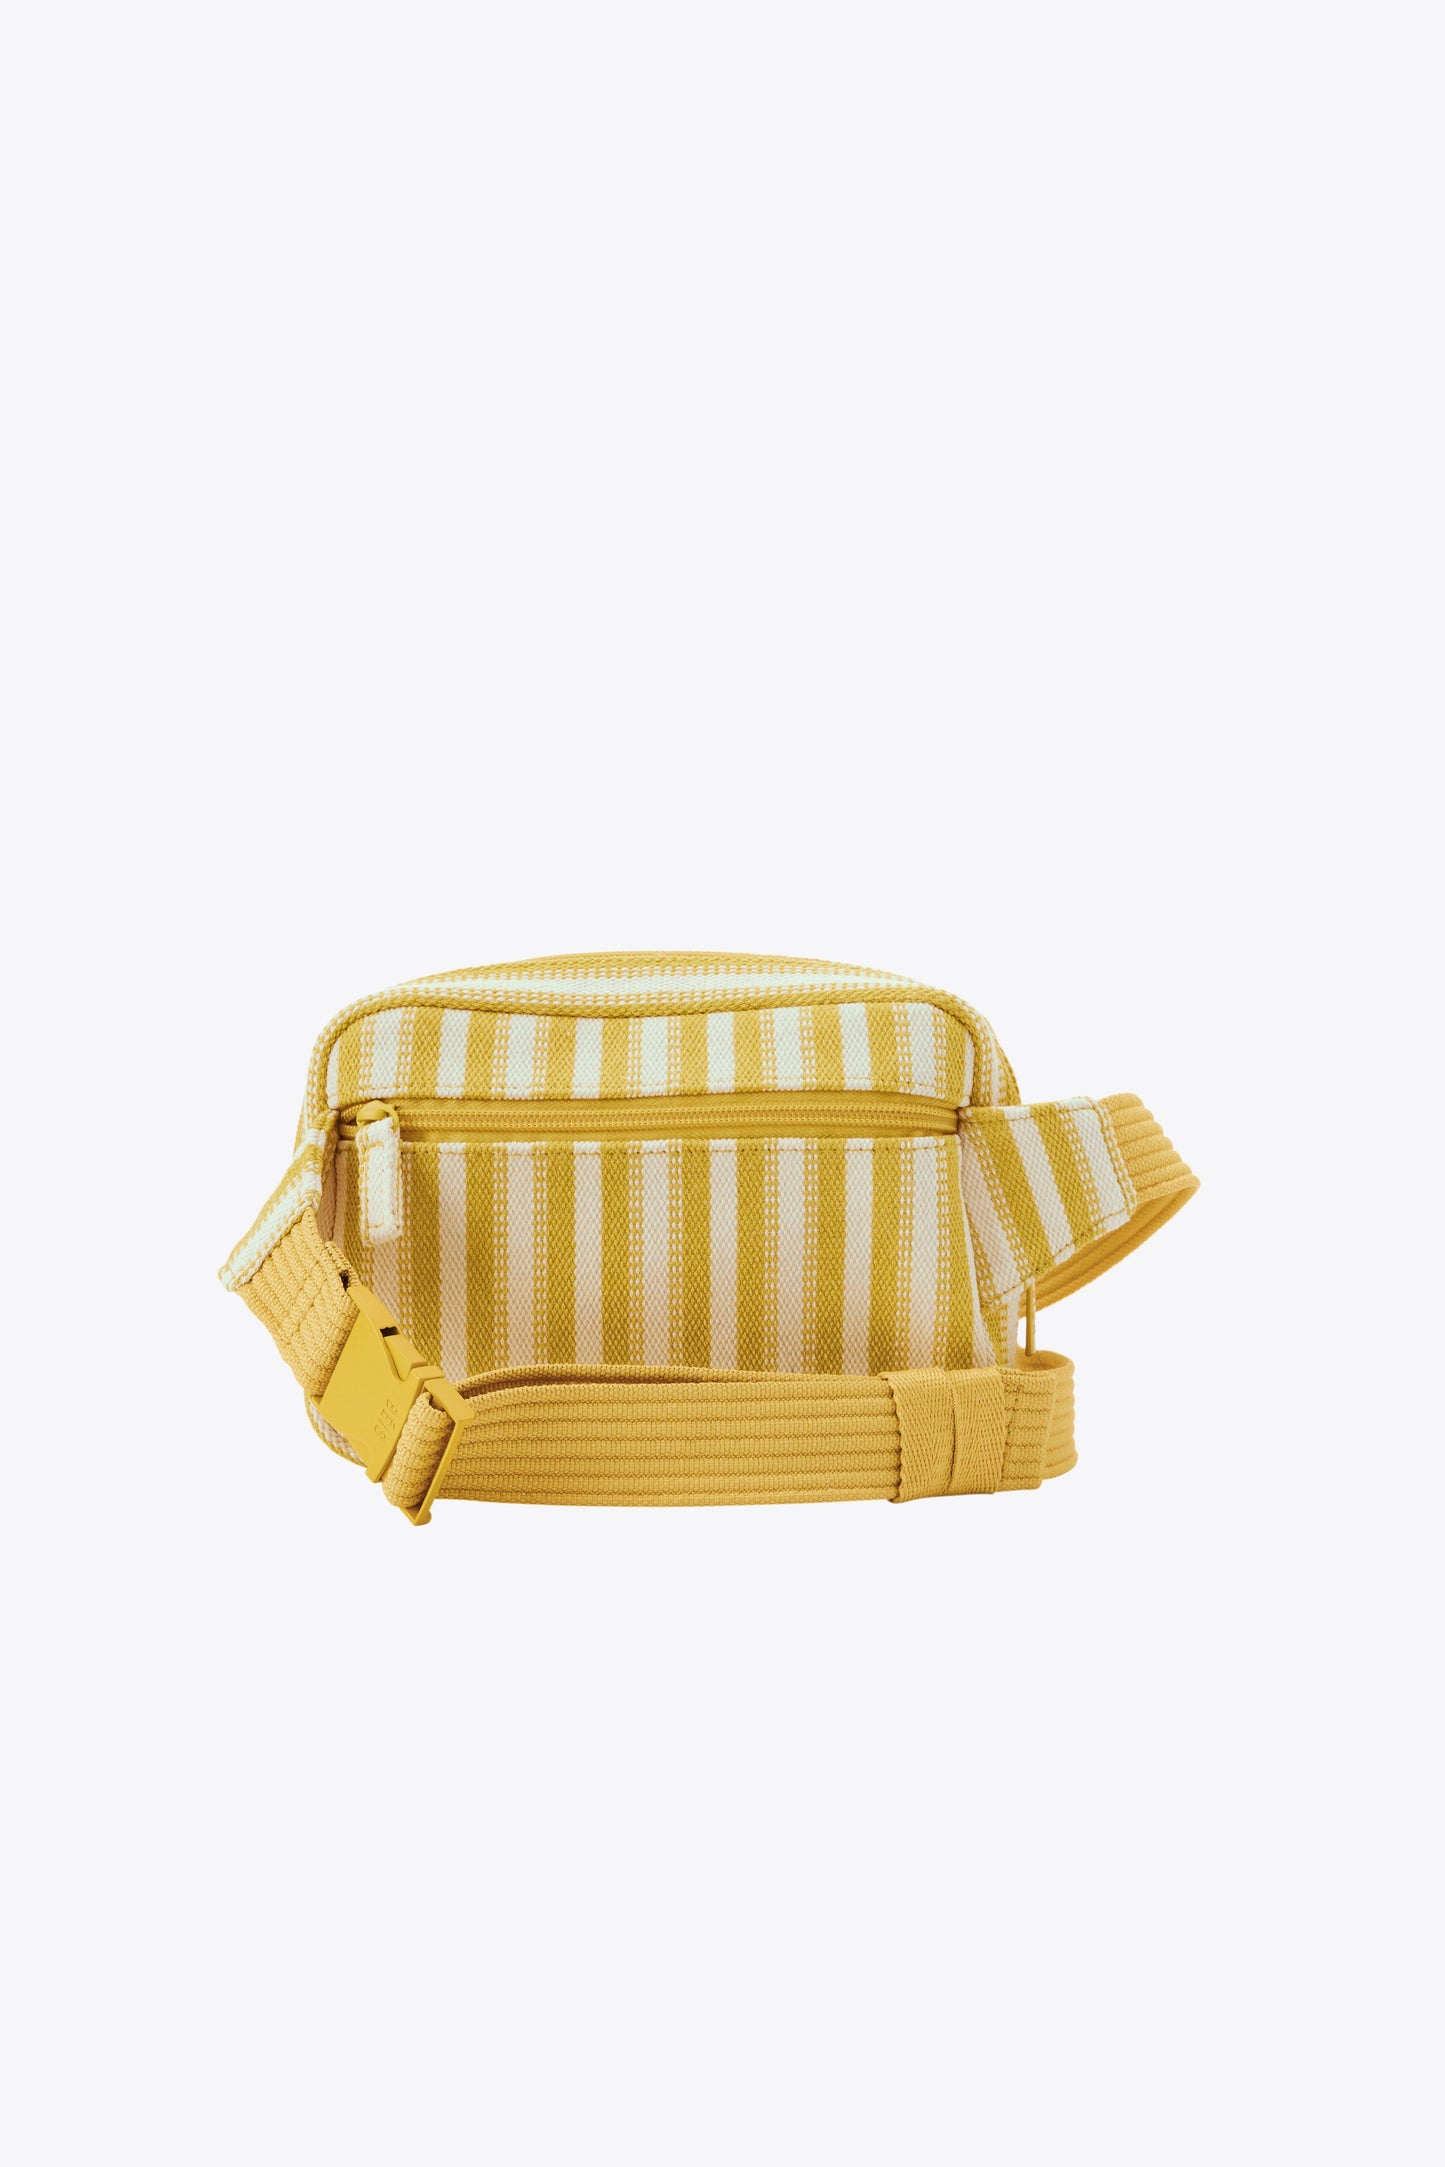 The Belt Bag in Honey Stripe